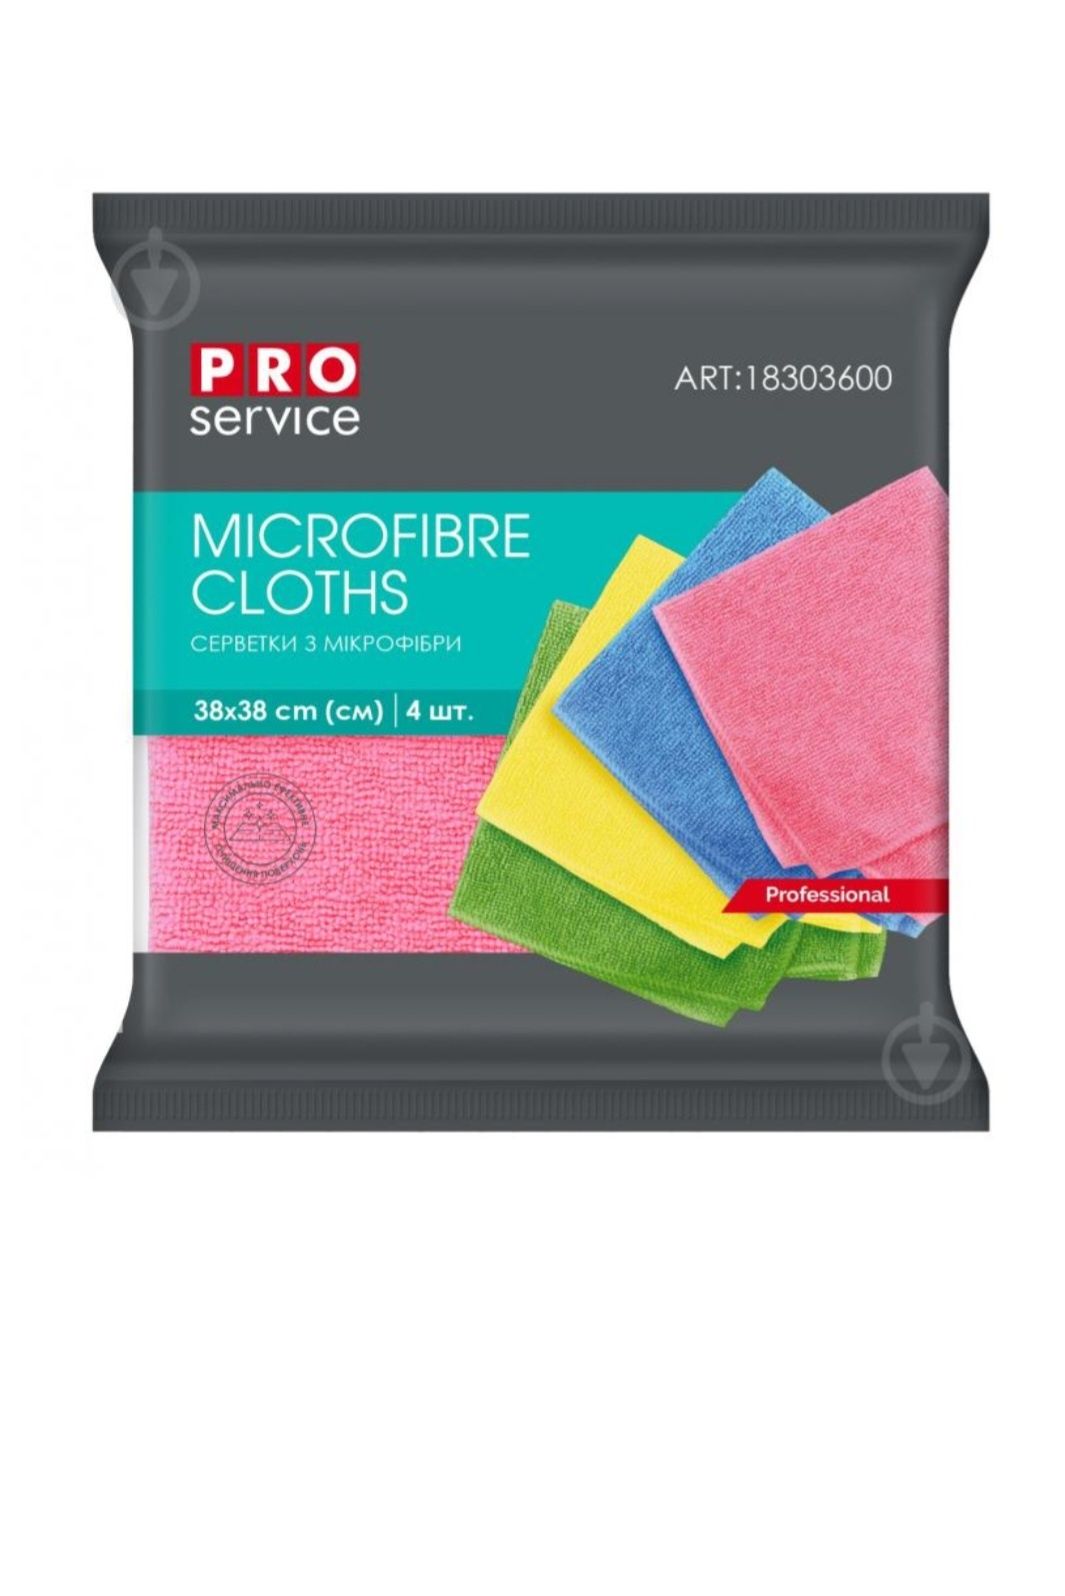 Салфетки PRO service из микрофибры Professional 4 шт Color Mix